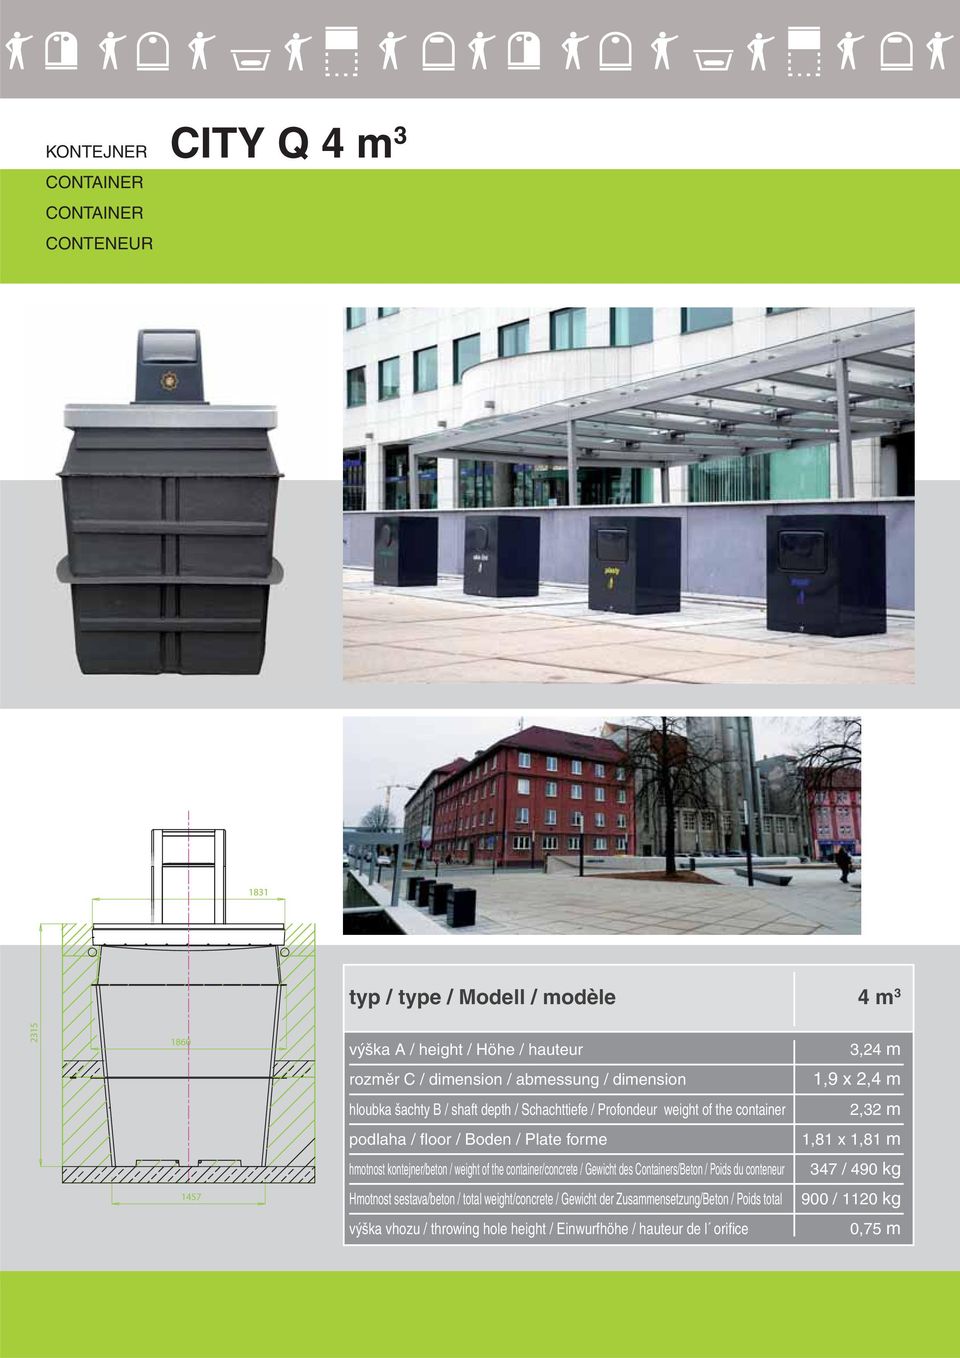 1,81 m hmotnost kontejner/beton / weight of the container/concrete / Gewicht des Containers/Beton / Poids du conteneur 347 / 490 kg 1457 Hmotnost sestava/beton